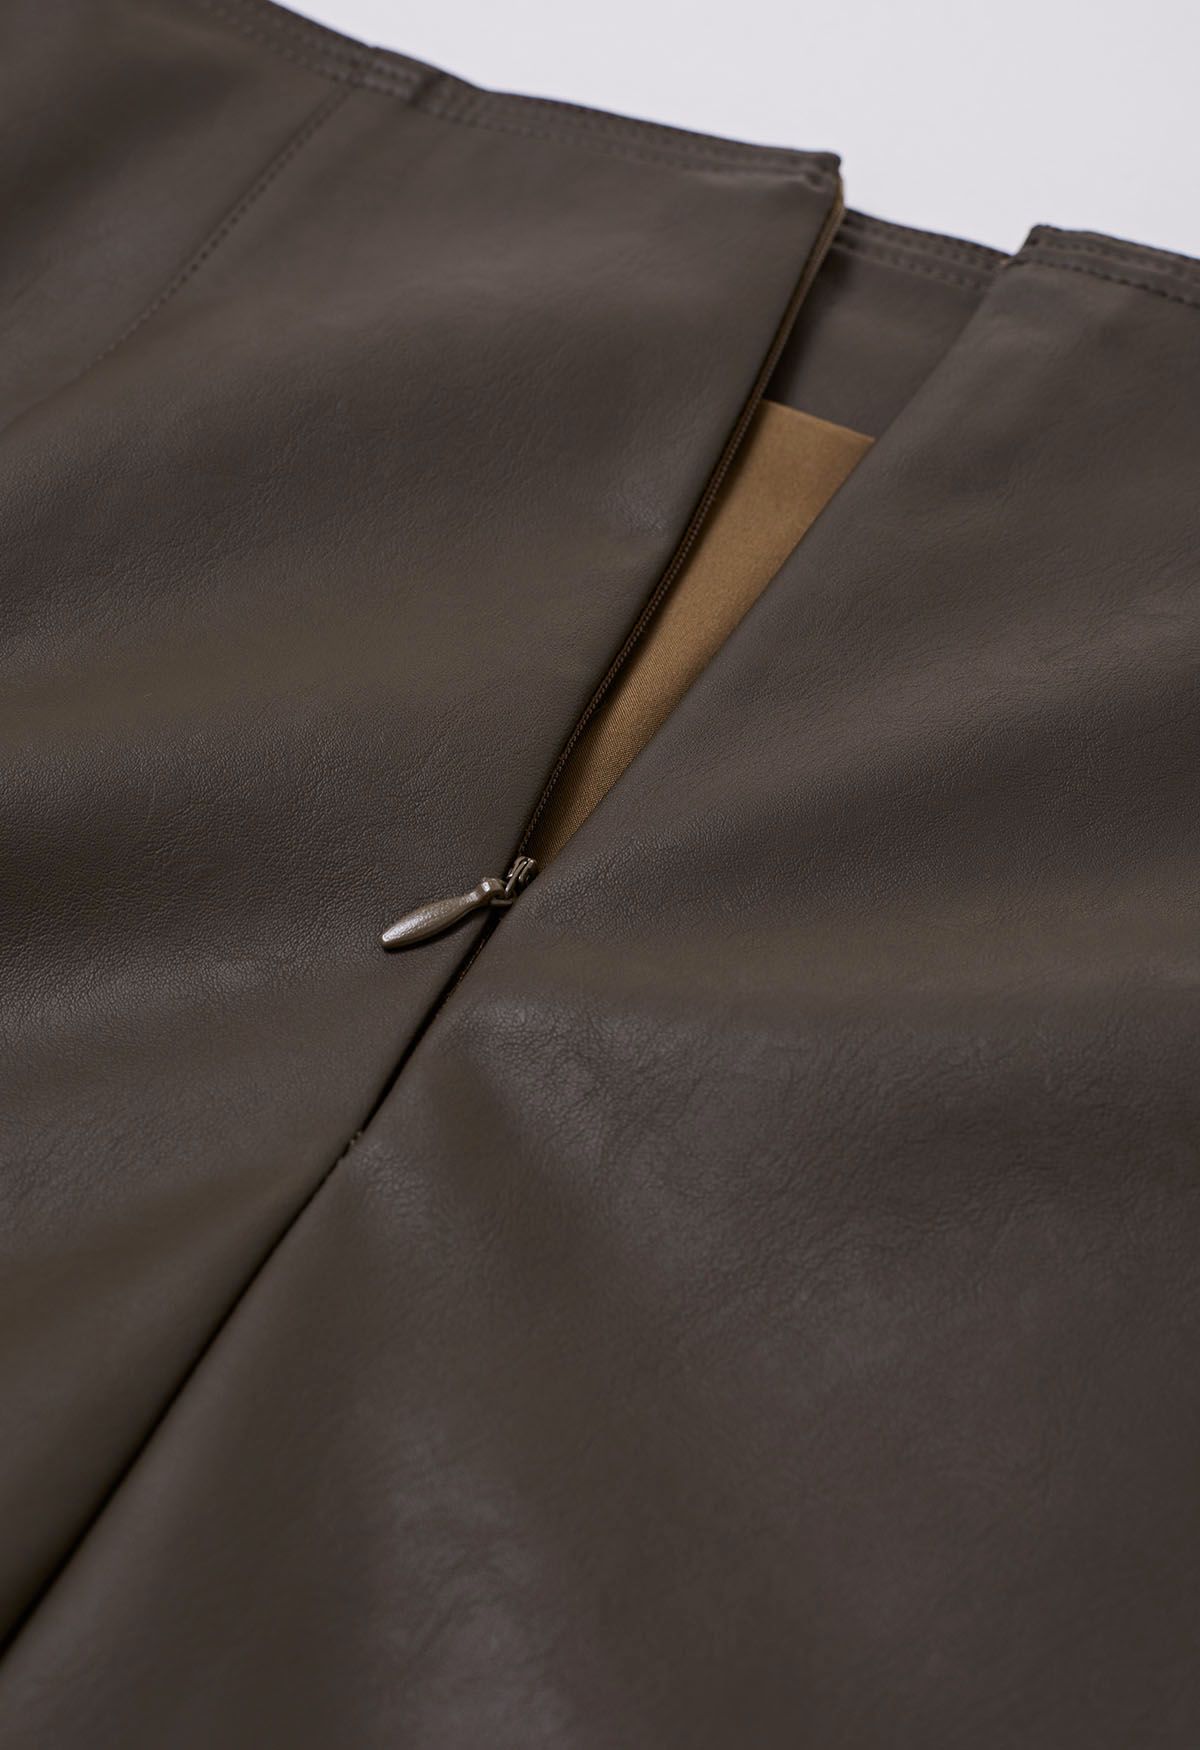 Minifalda de piel sintética con botones en marrón